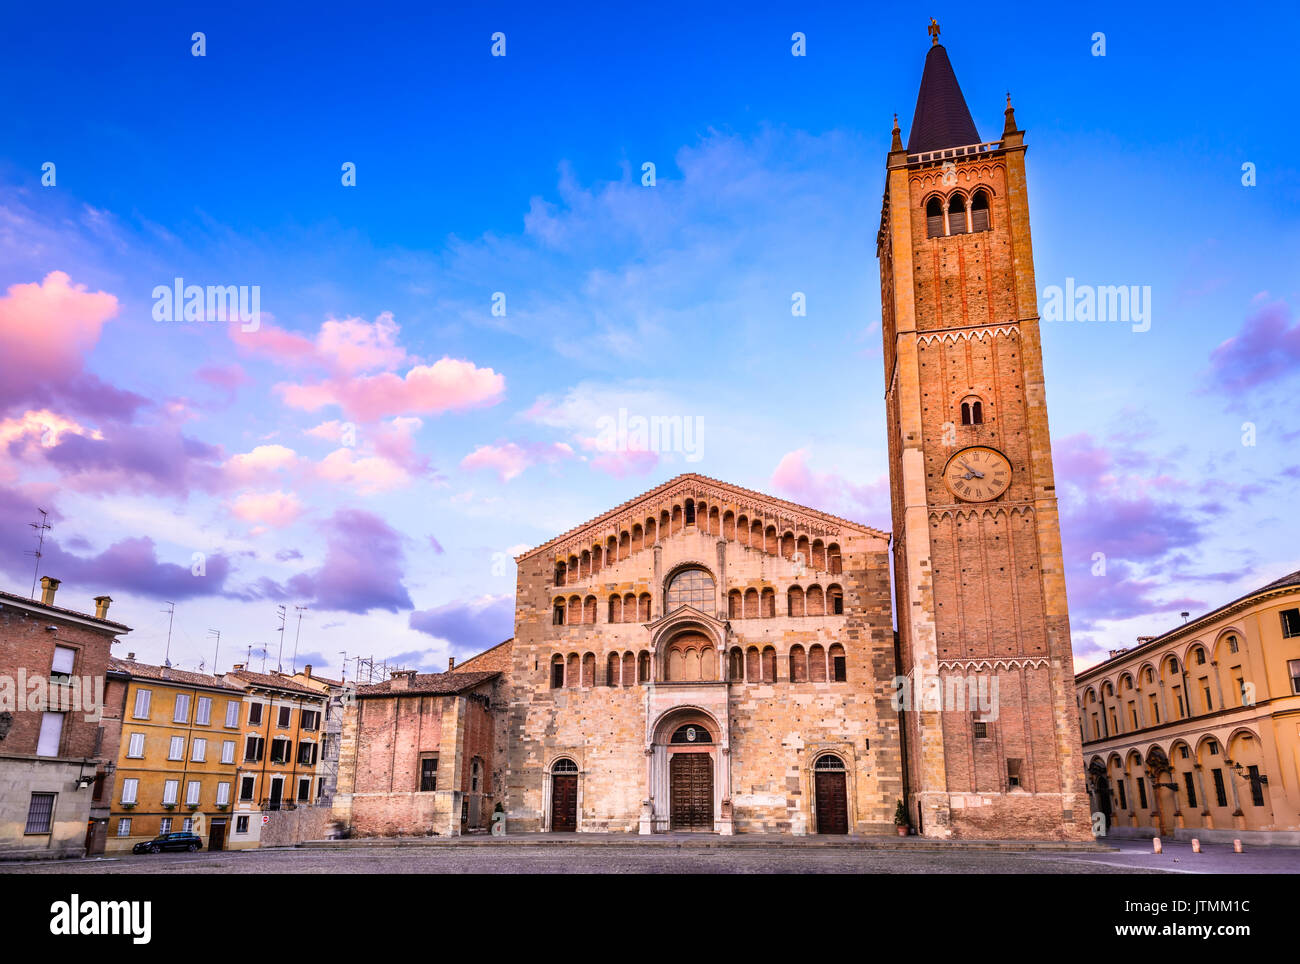 Parma, Italien - Piazza del Duomo mit dem Dom und Baptisterium bei Dämmerung Licht. Die romanische Architektur in der Emilia-Romagna. Stockfoto